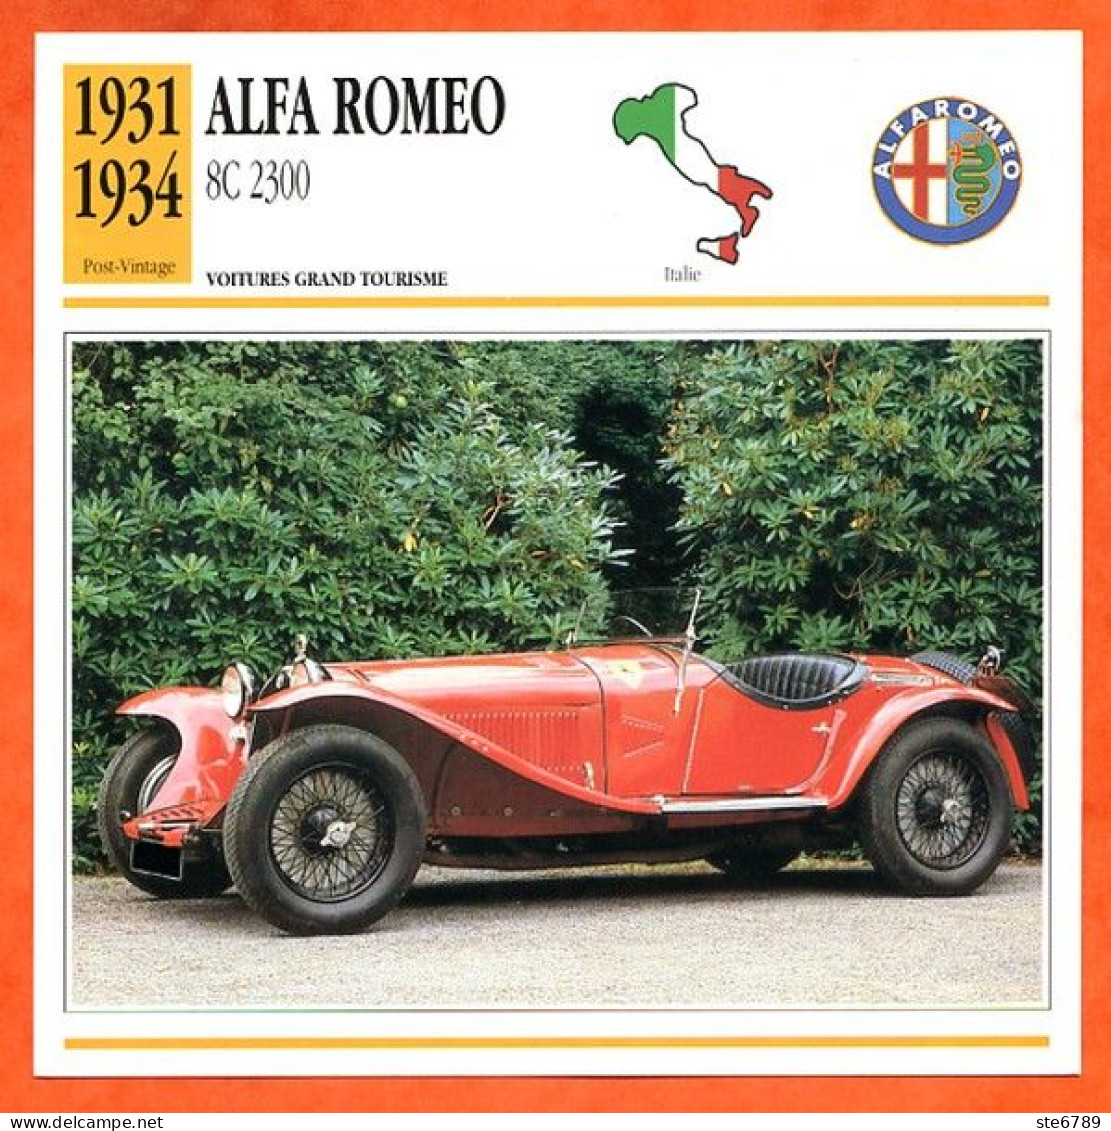 ALFA ROMEO 8C 2300 1931 Voiture Grand Tourisme Italie Fiche Technique Automobile - Coches